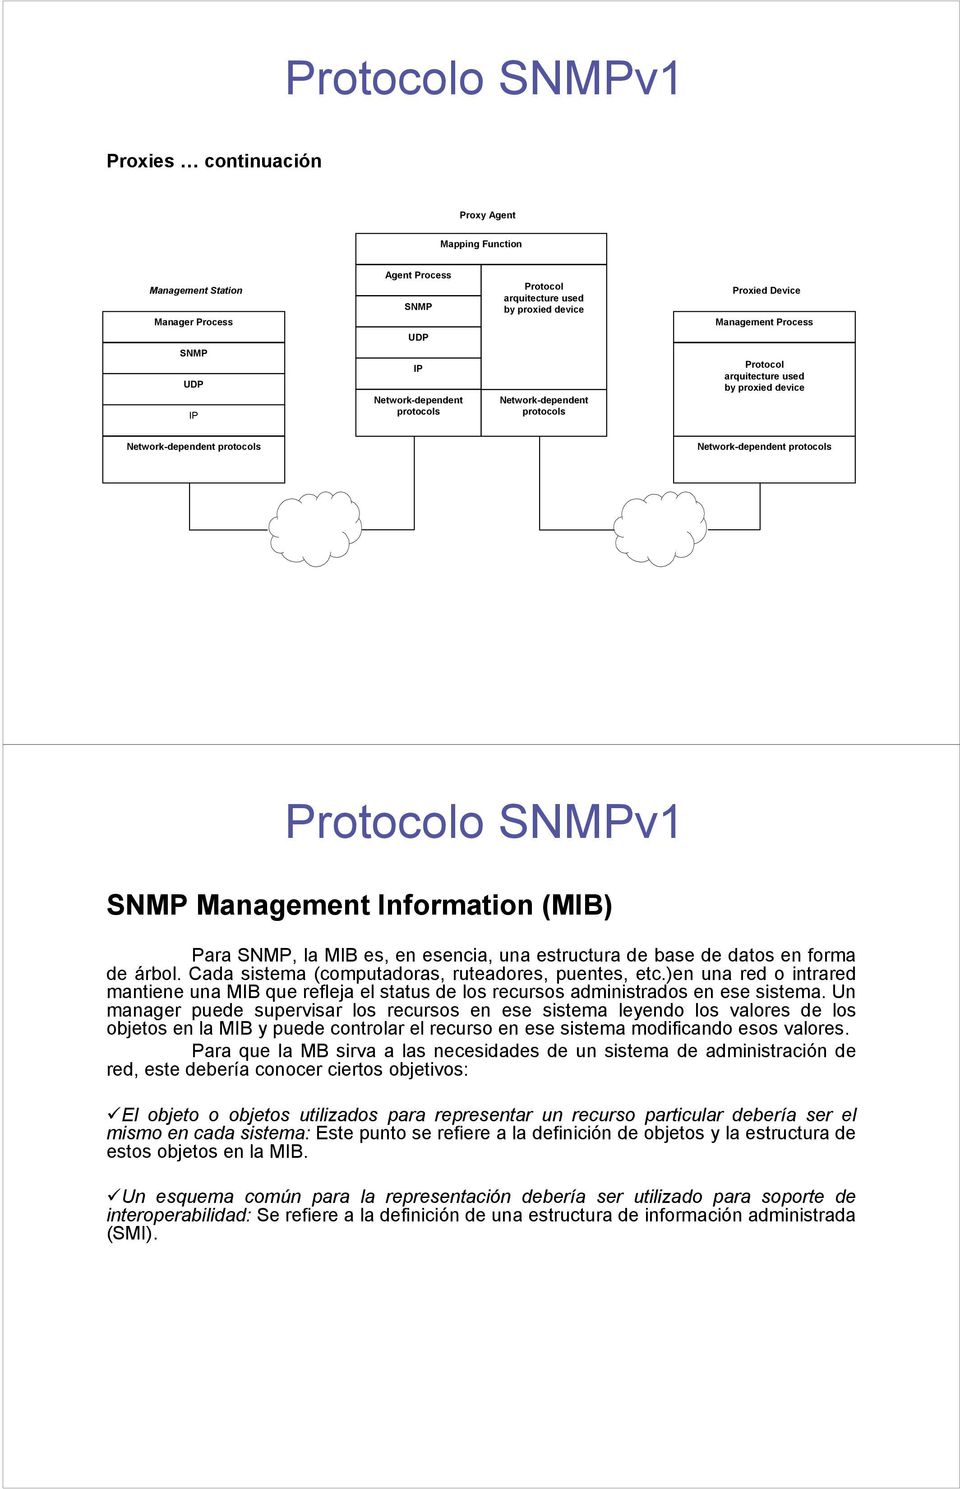 Para SNMP, la MIB es, en esencia, una estructura de base de datos en forma de árbol. Cada sistema (computadoras, ruteadores, puentes, etc.